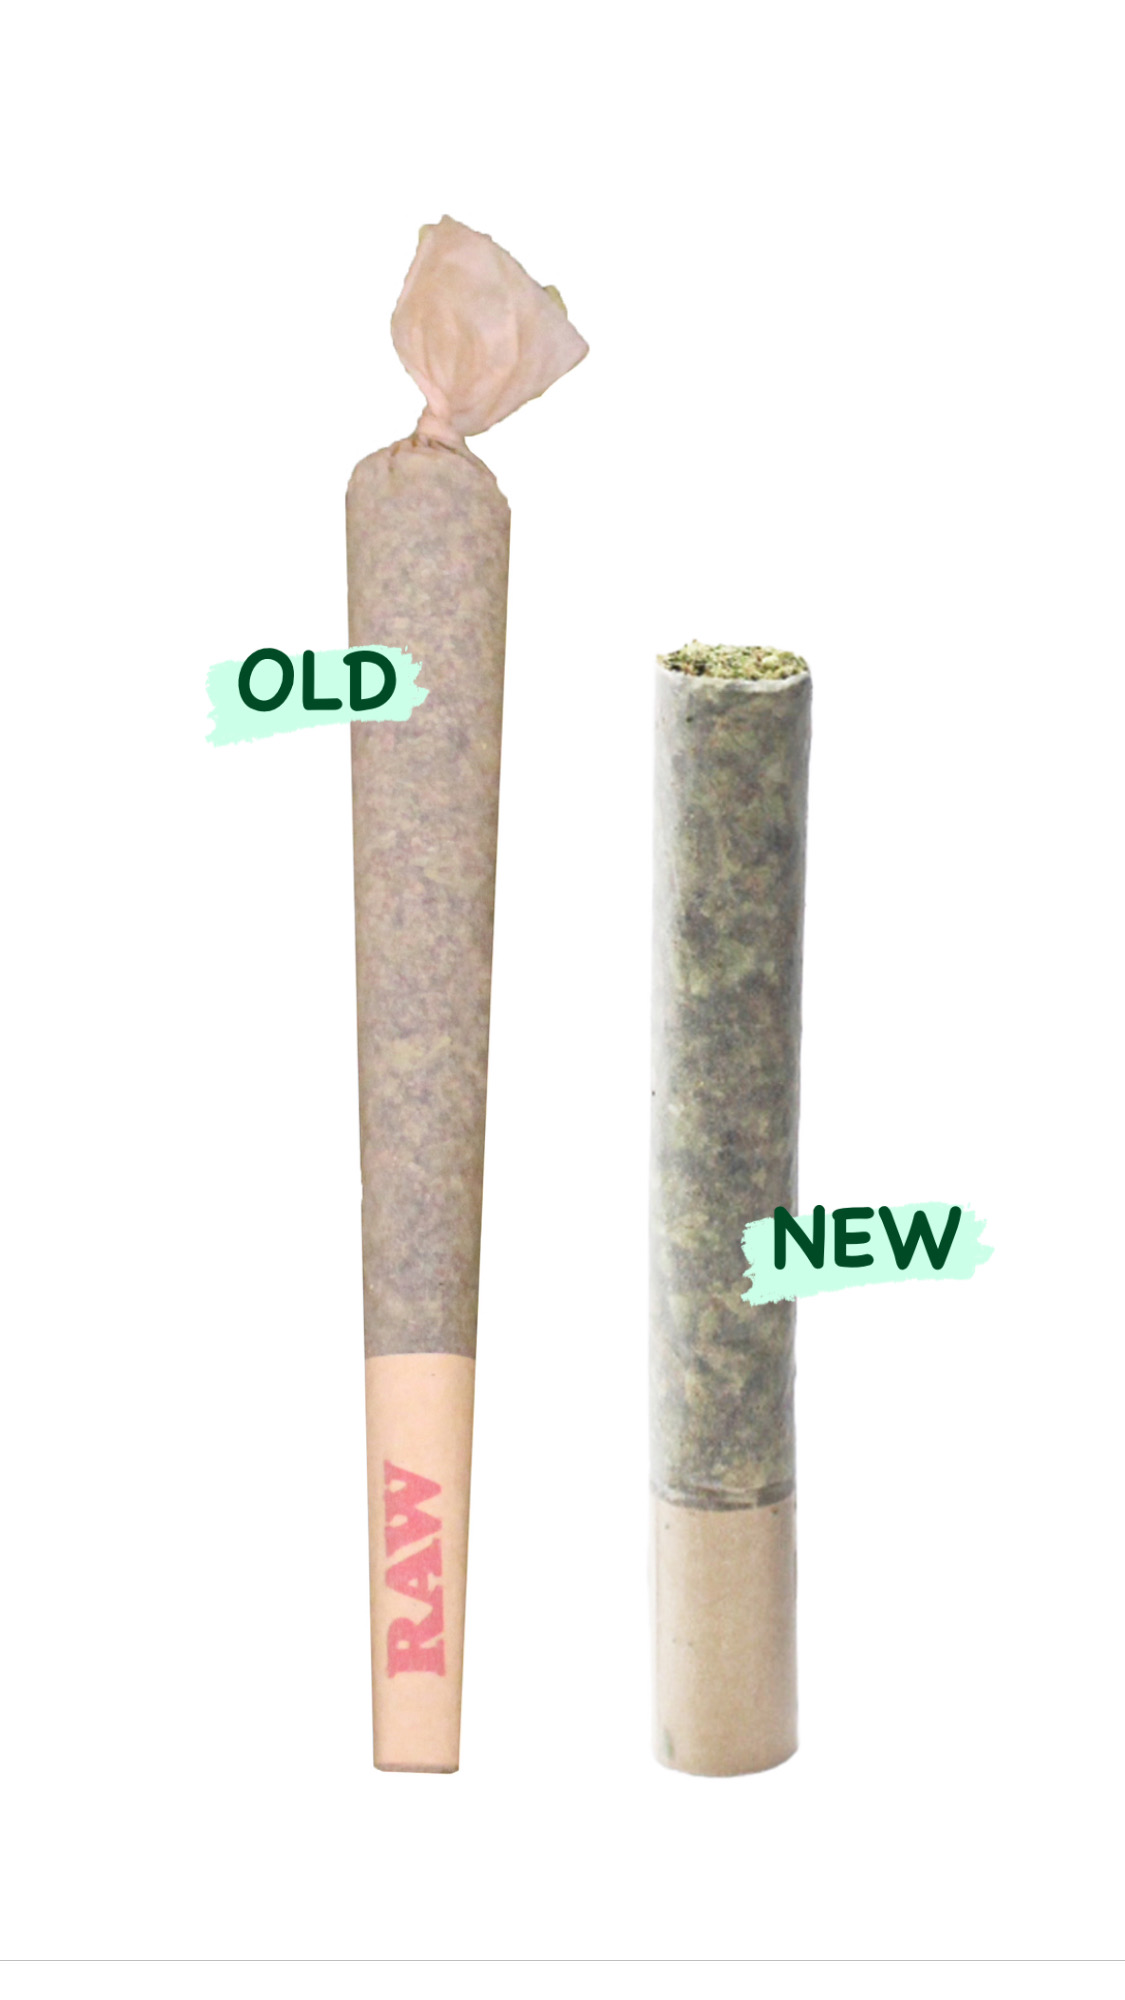 new pre-rolls vs. cones